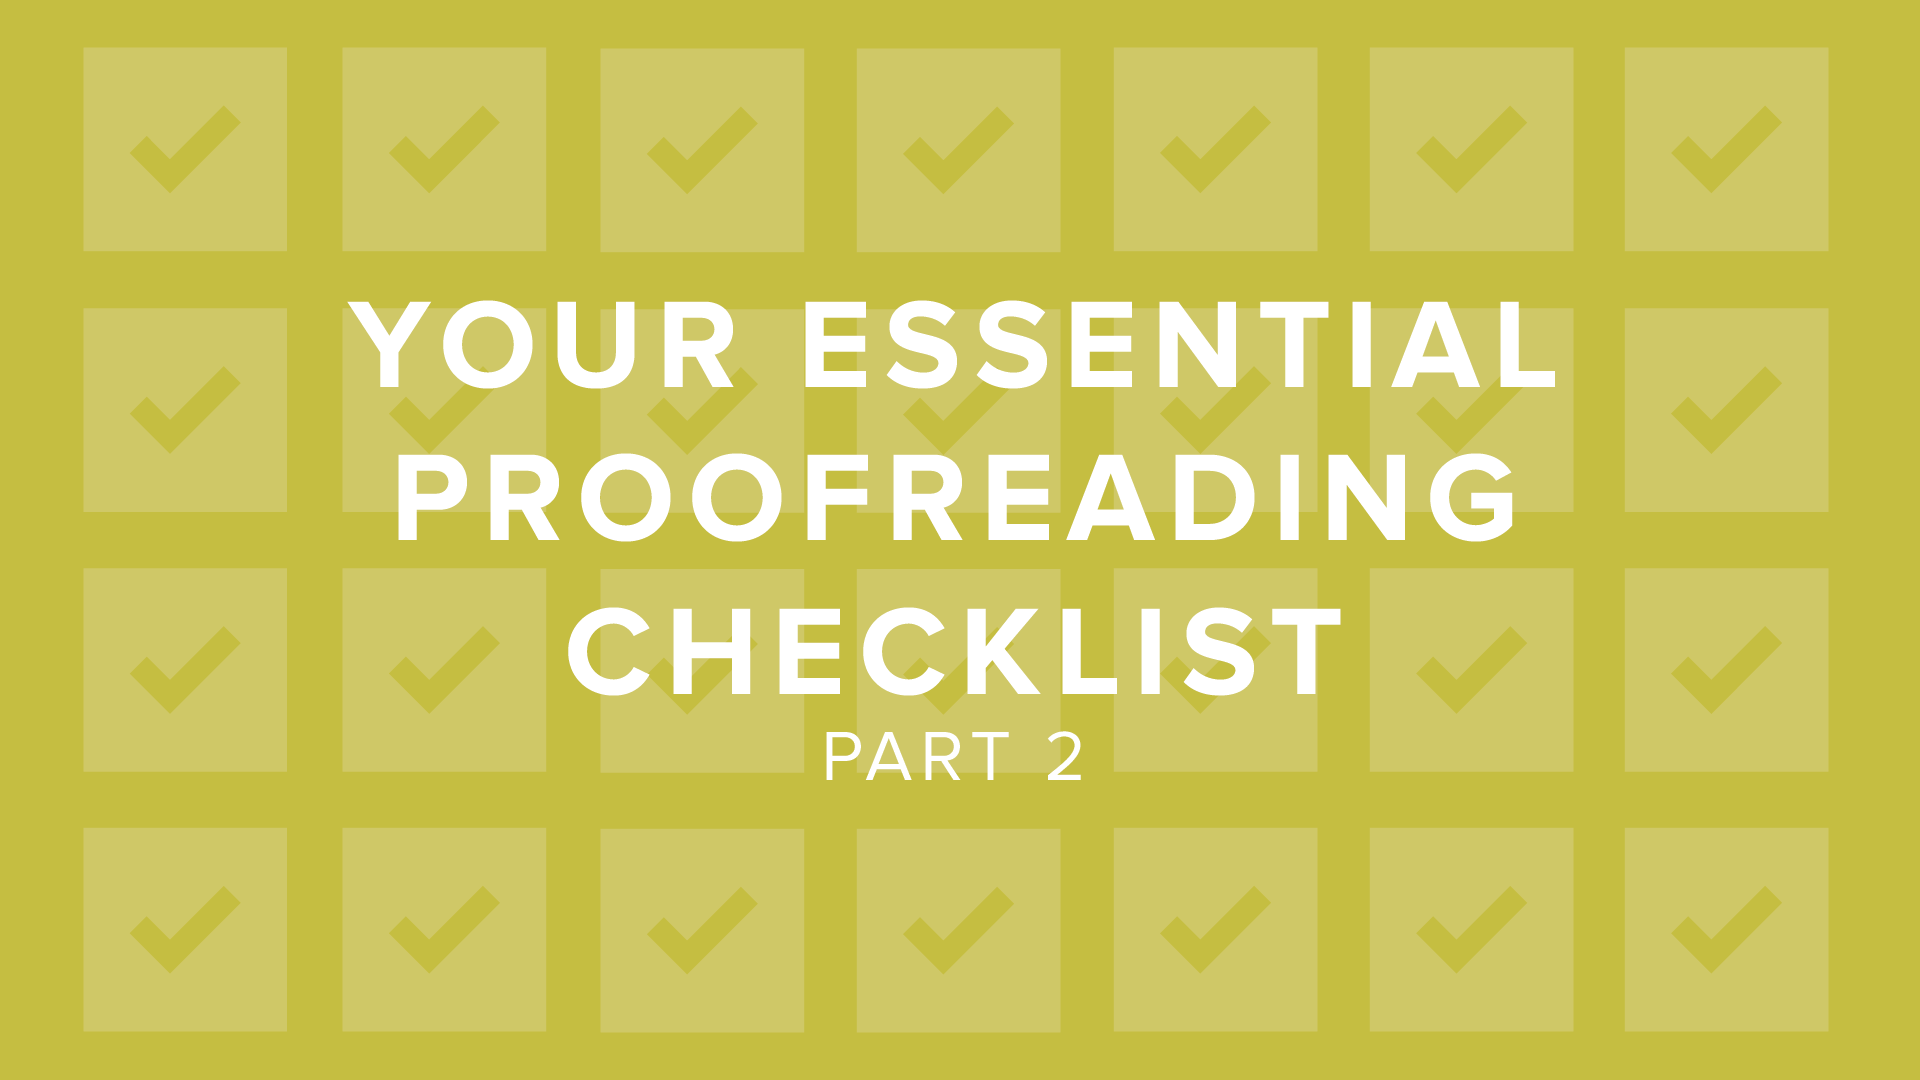 DigitalChalk: Part 2: Your Essential Proofreading Checklist